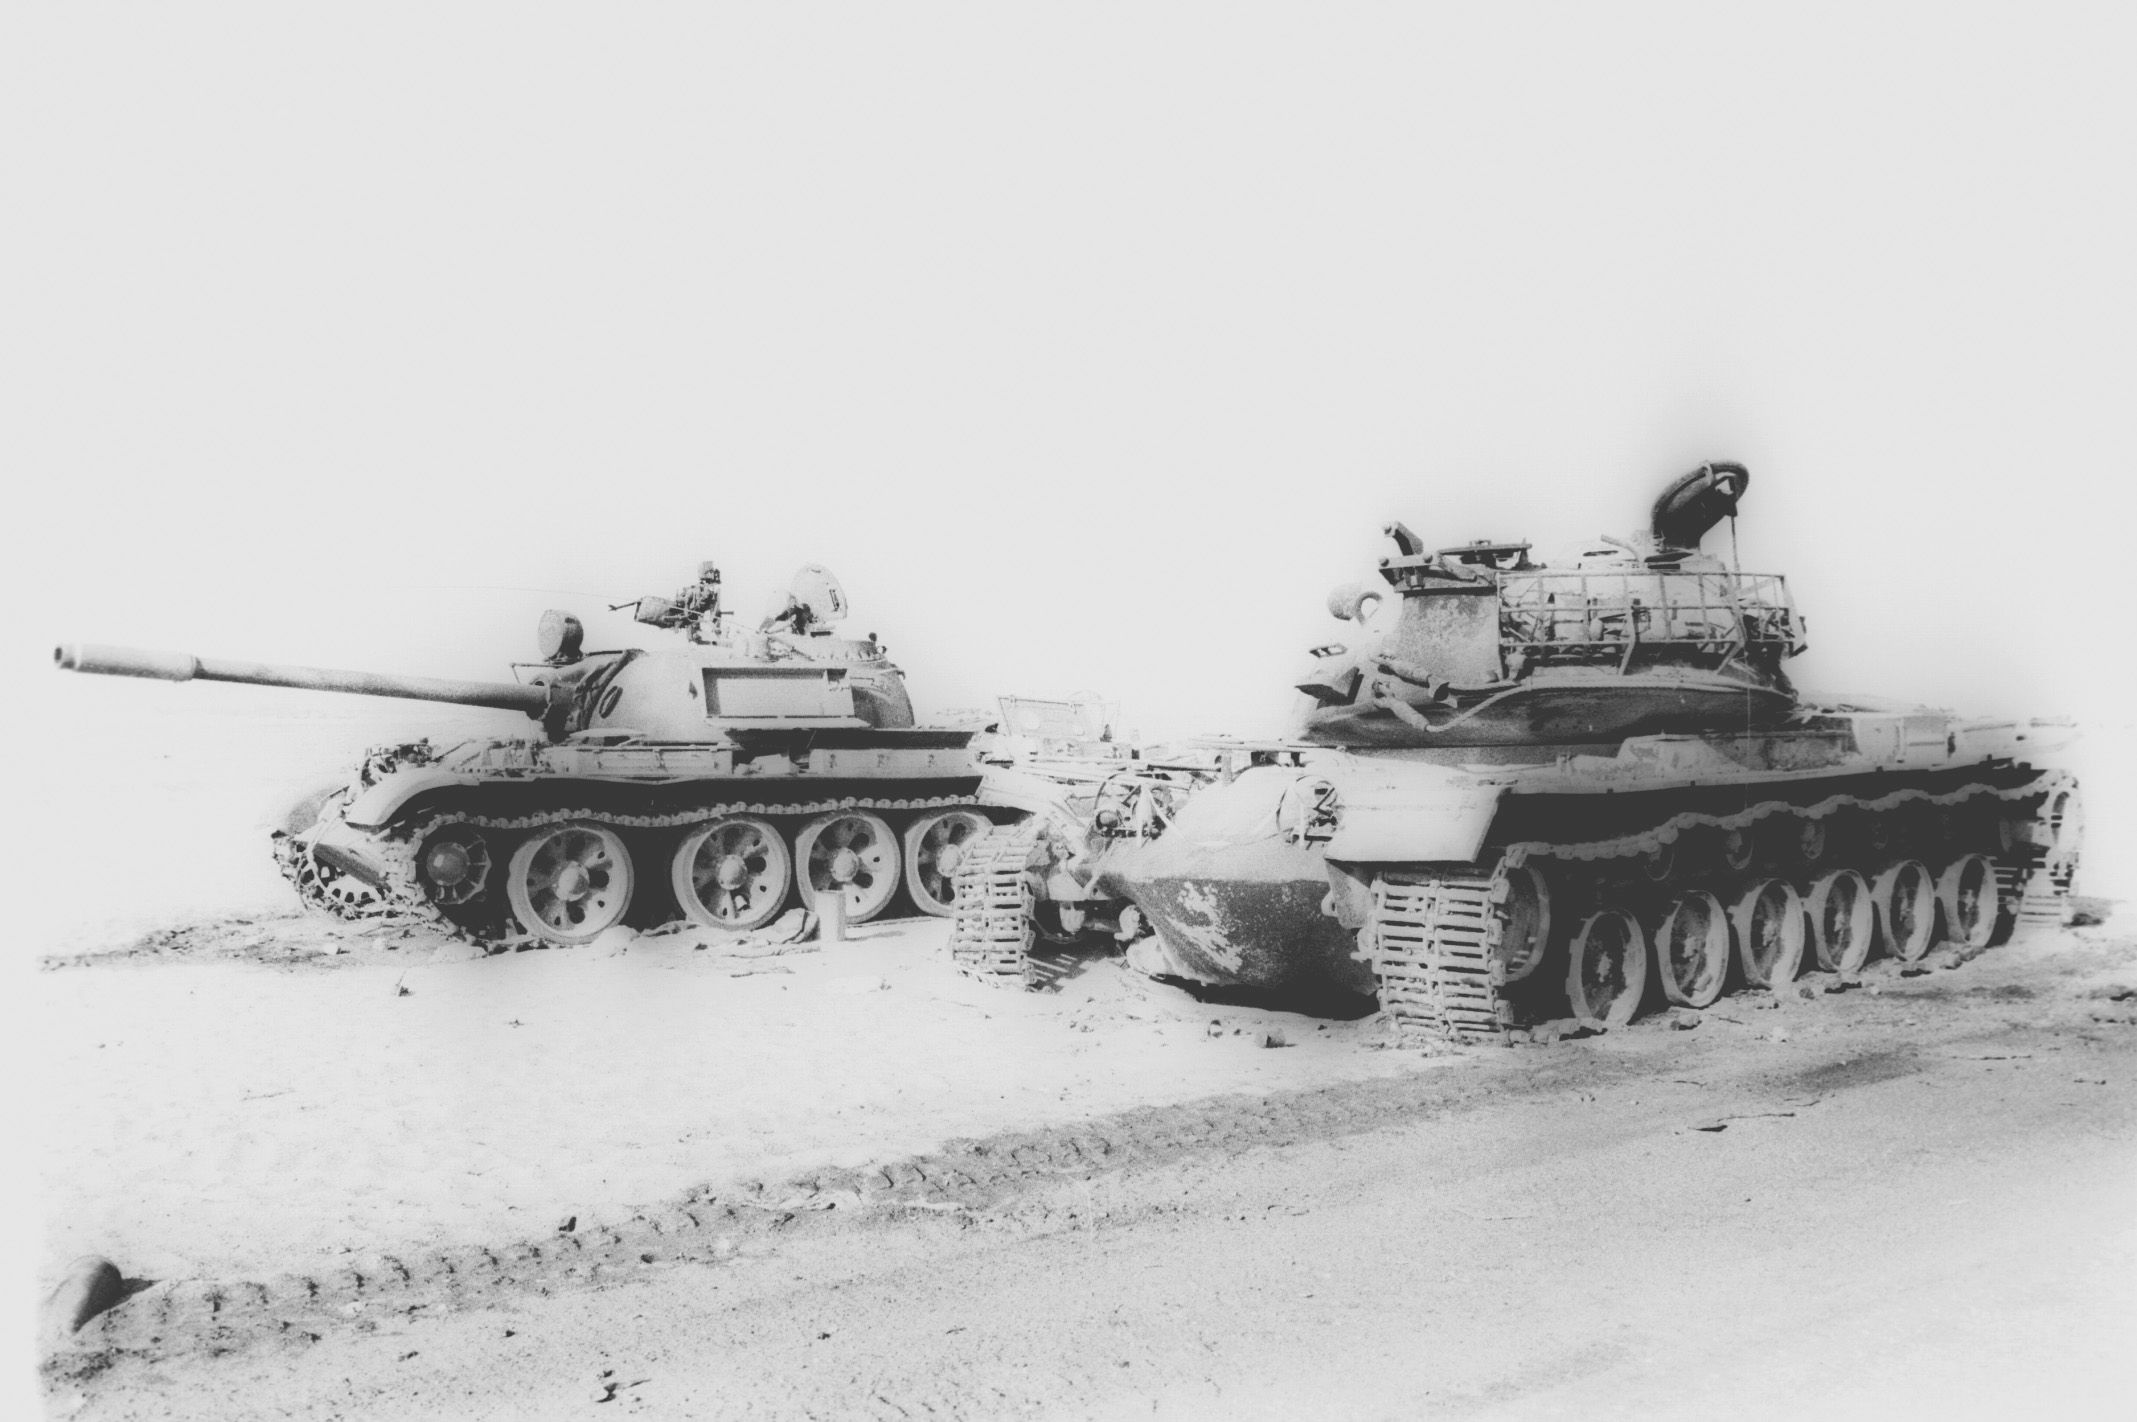 Une ère de pétrole et de bruit - Page 2 Egyptian_and_Israeli_Tanks_Destroyed_Near_the_Suez_Canal_During_Yom_Kippur_War%2C_1973